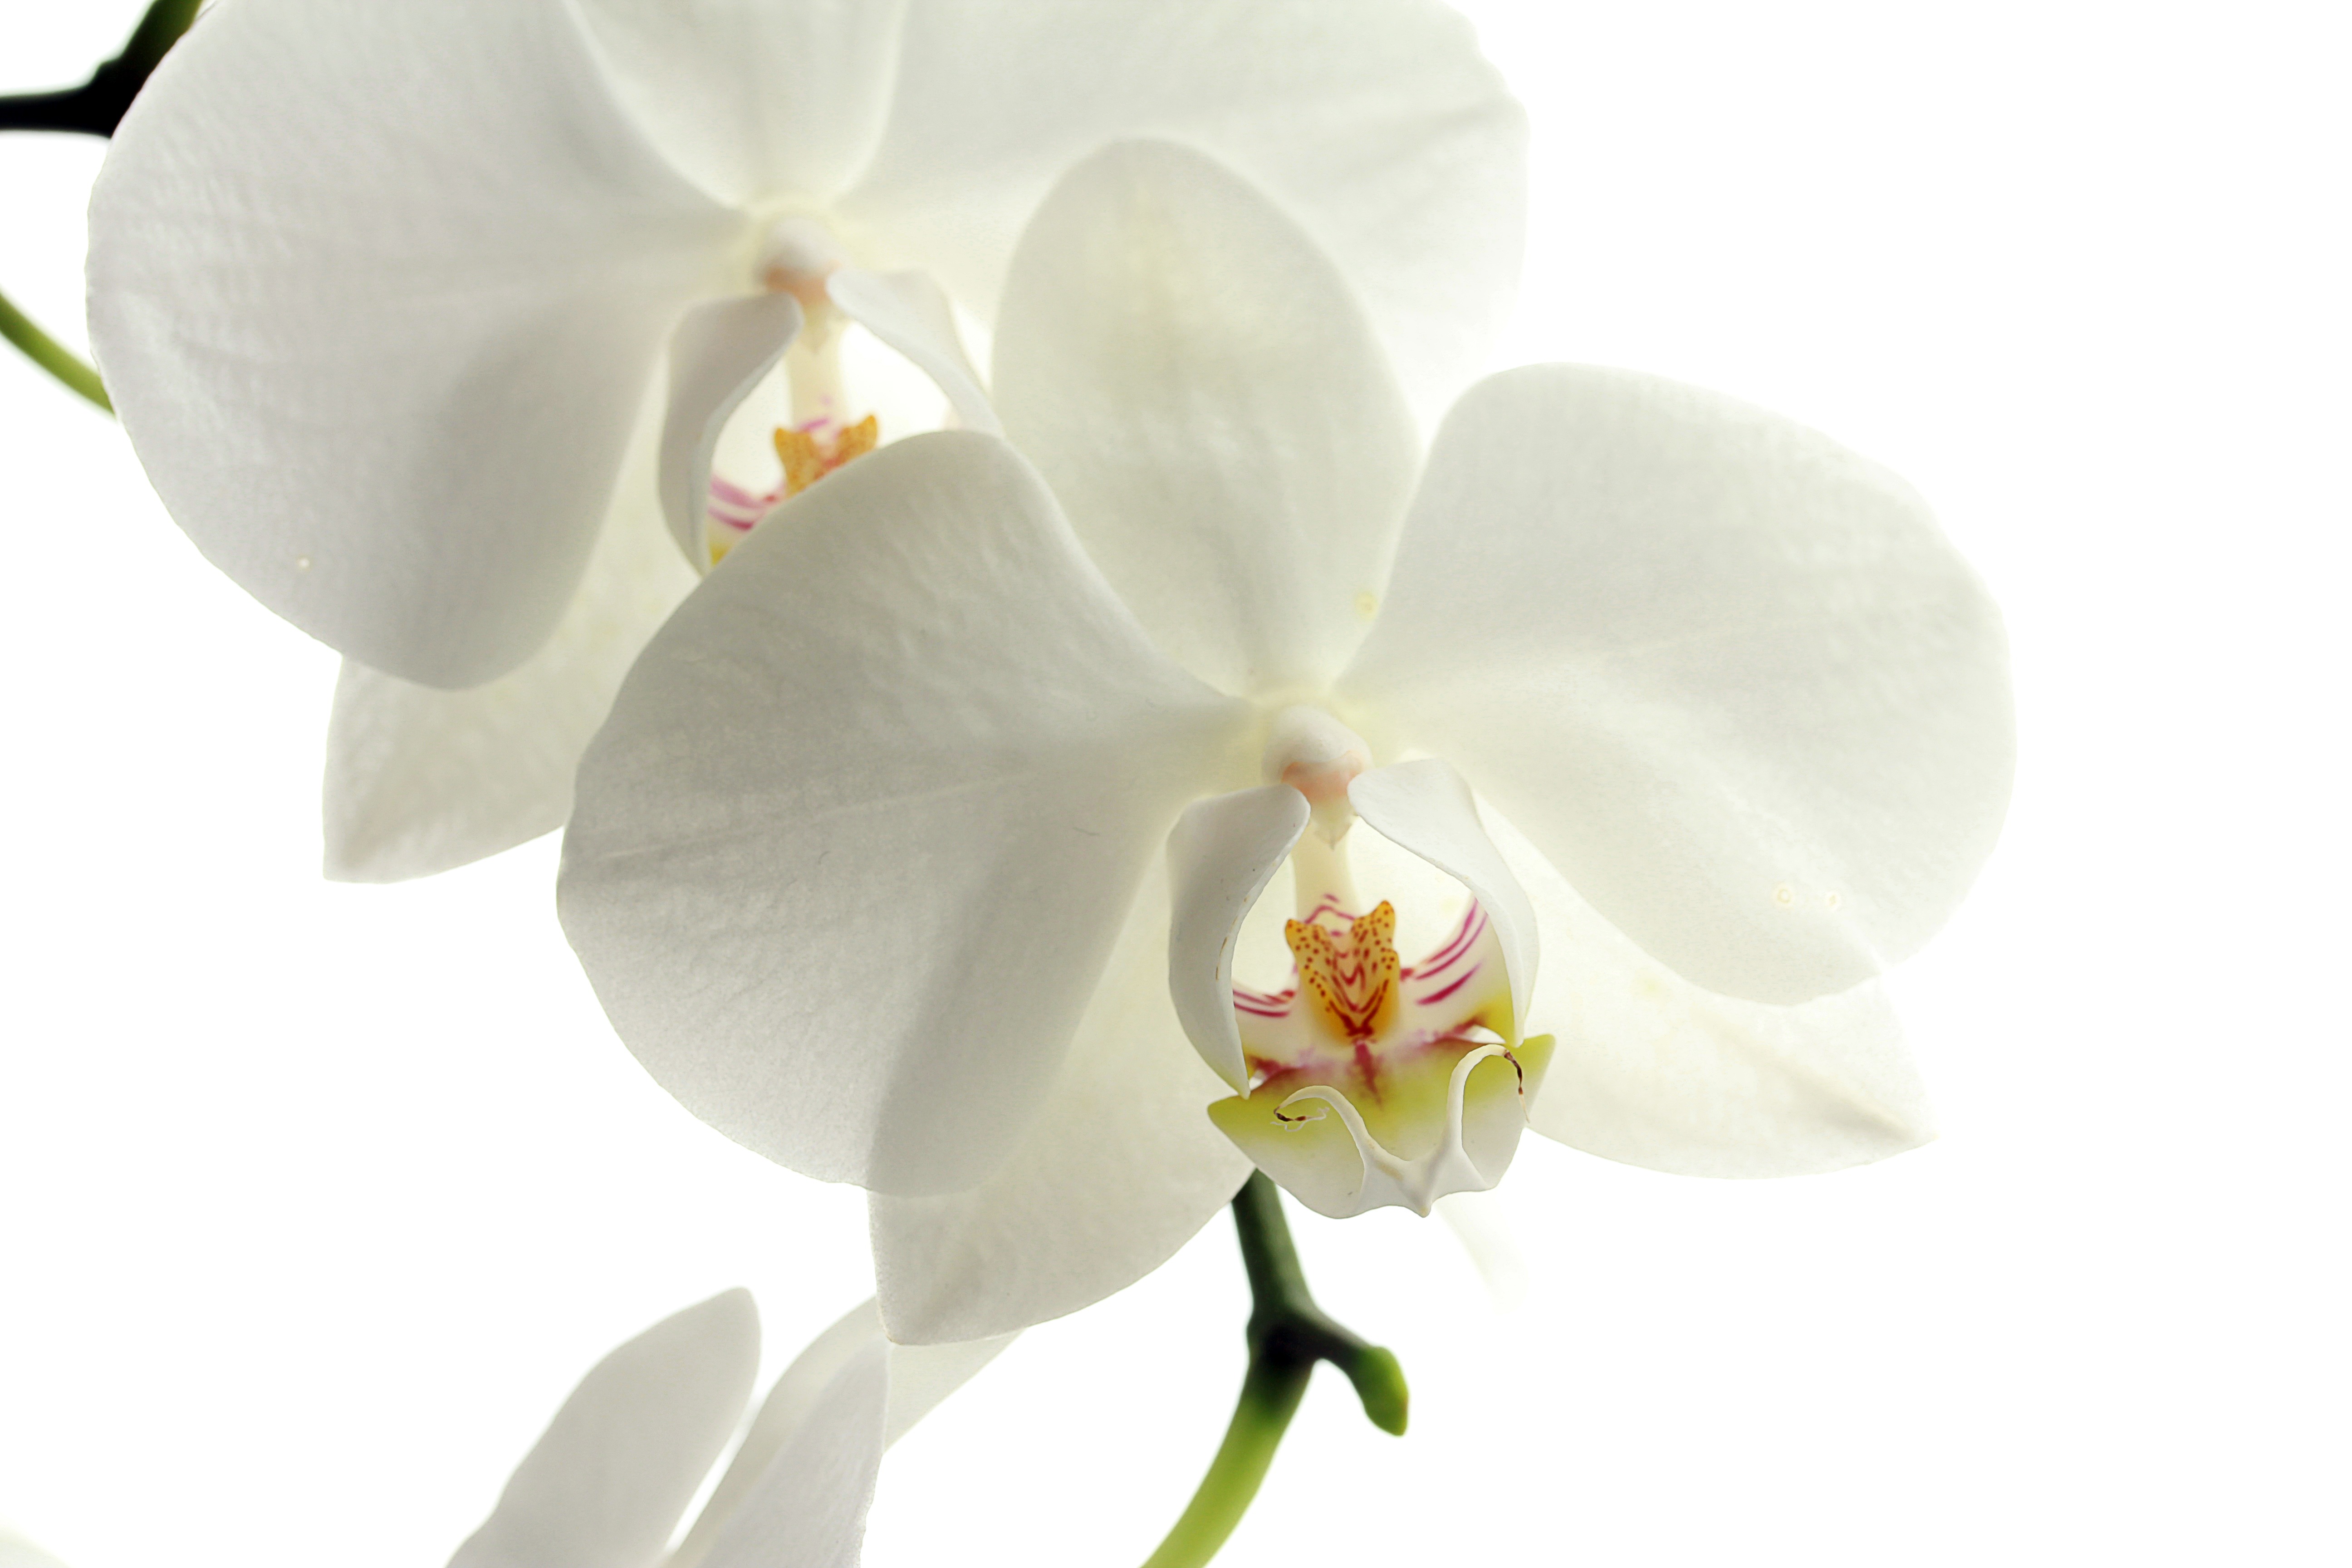 Скачать обои Орхидея на телефон бесплатно